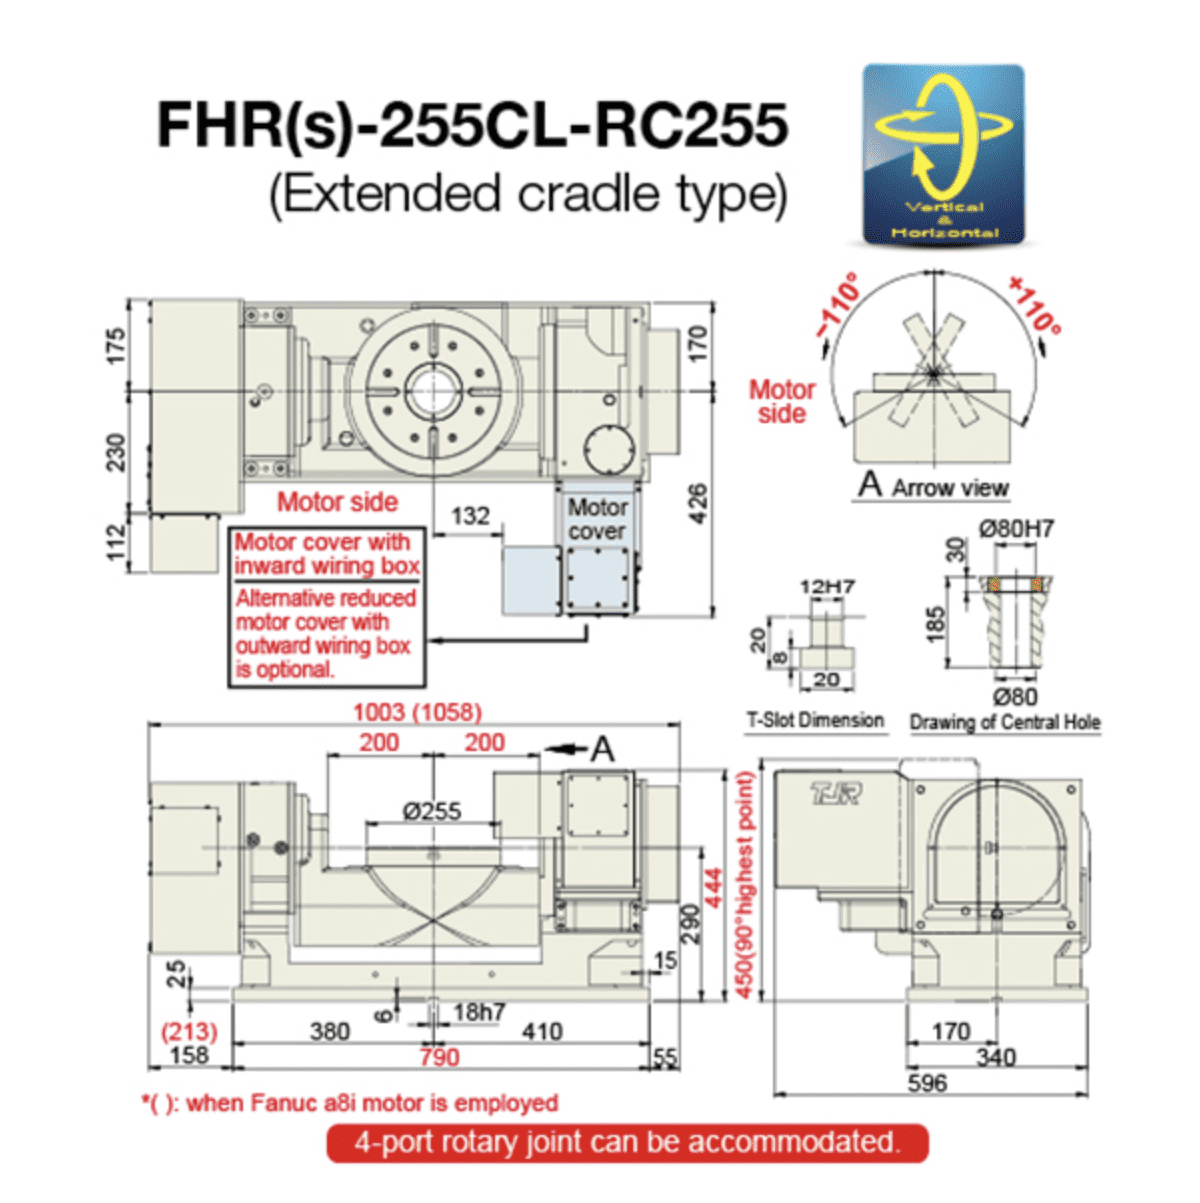 FHR(s)-255CL-RC255